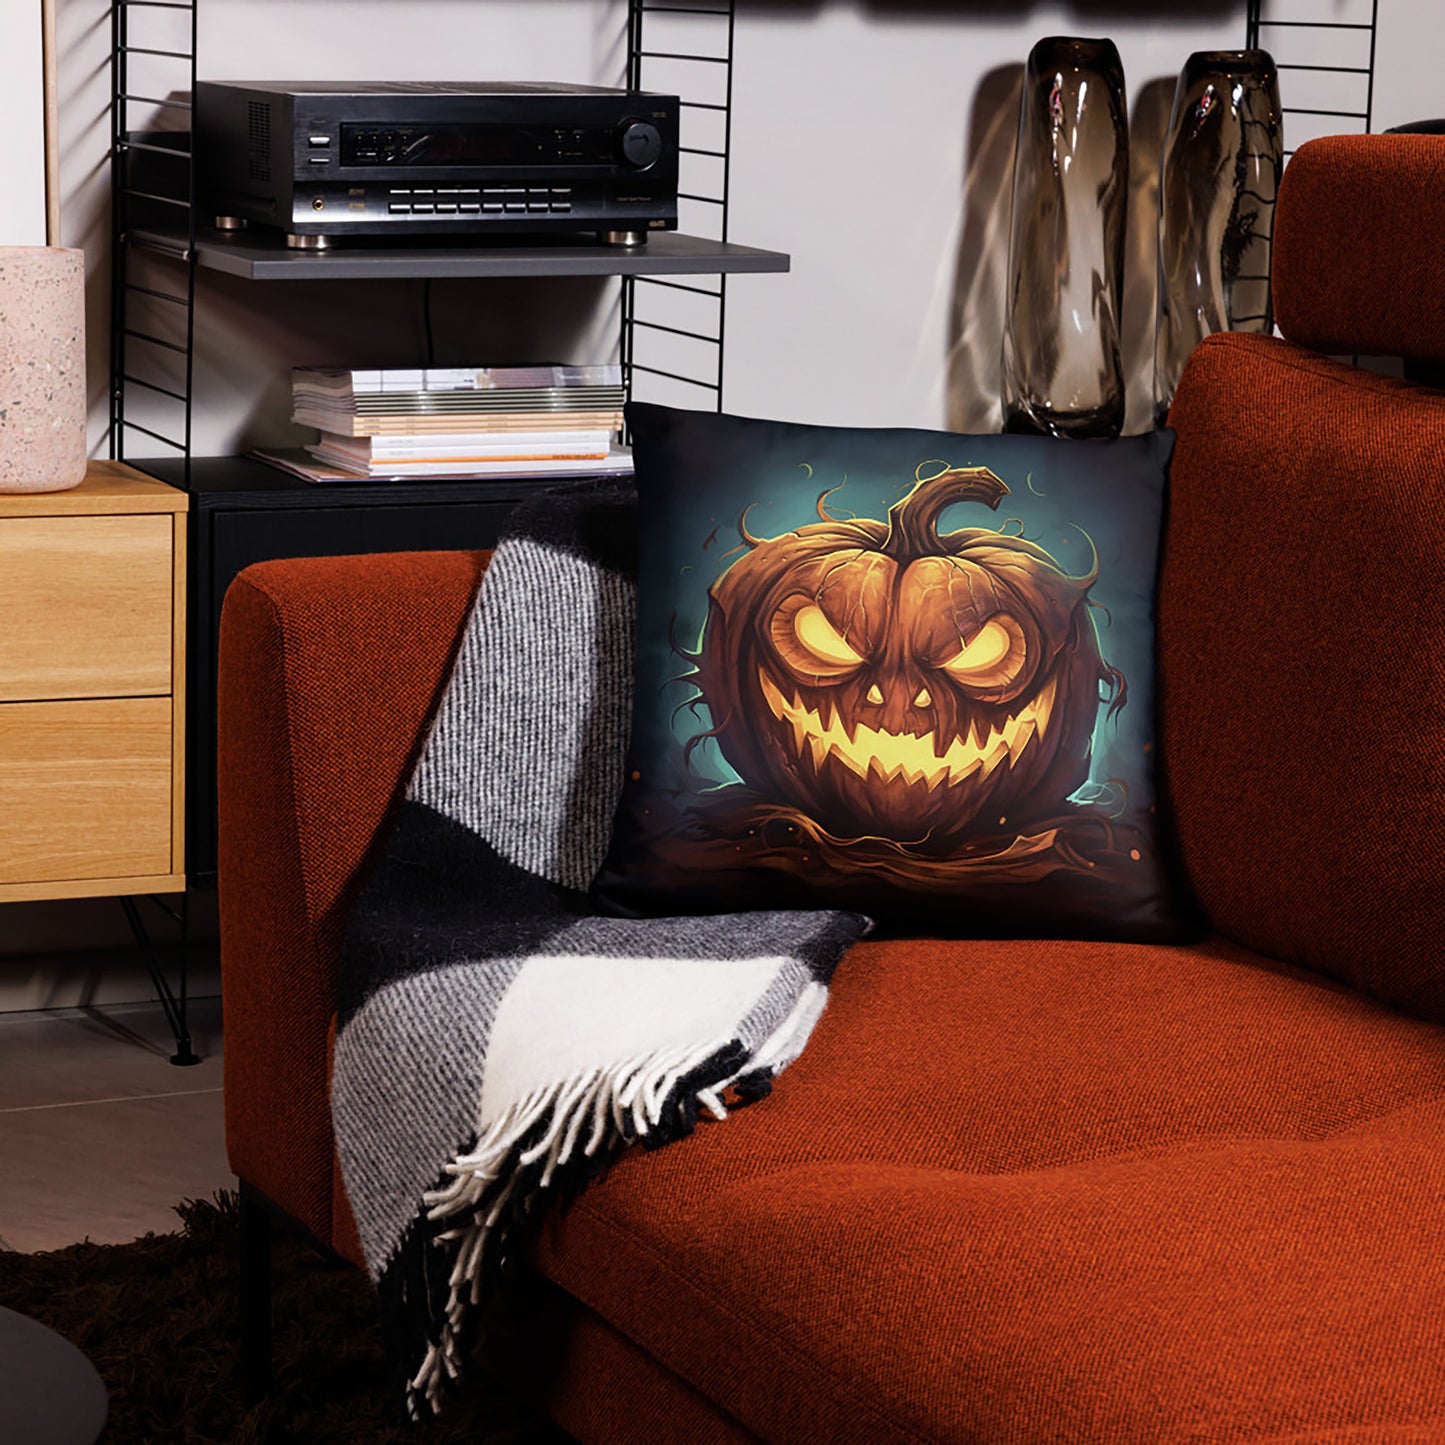 Halloween Throw Pillow Mischievous Jack O'Lantern Polyester Decorative Cushion 18x18